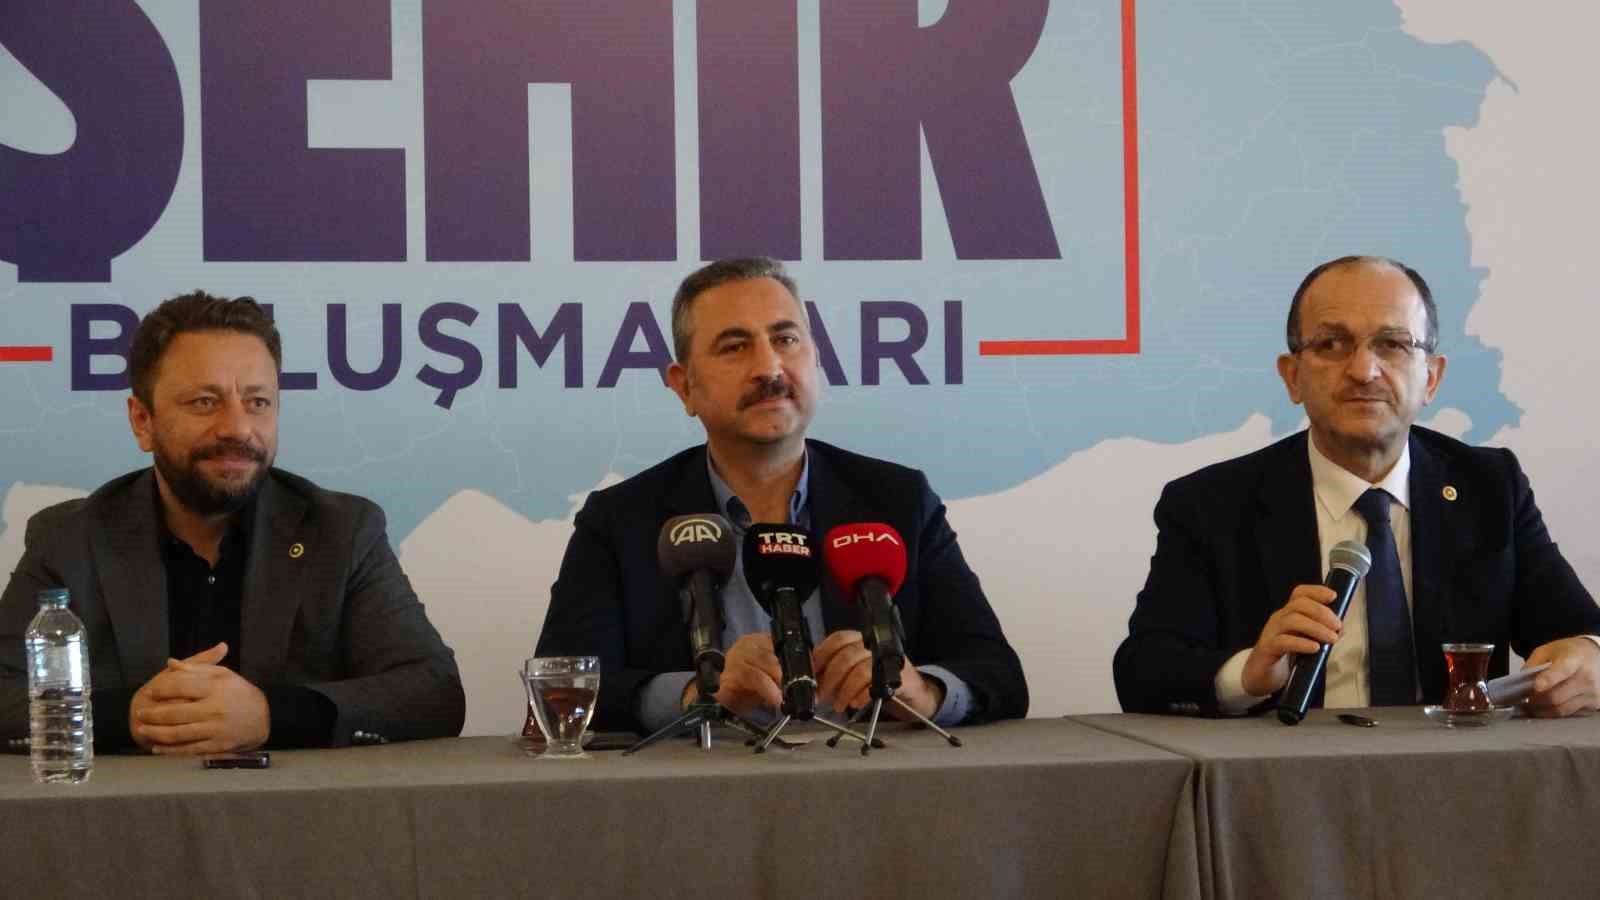 AK Parti Grup Başkanvekili Gül: “Türkiye’nin sivil ve demokratik bir anayasa yapma ödevi vardır”